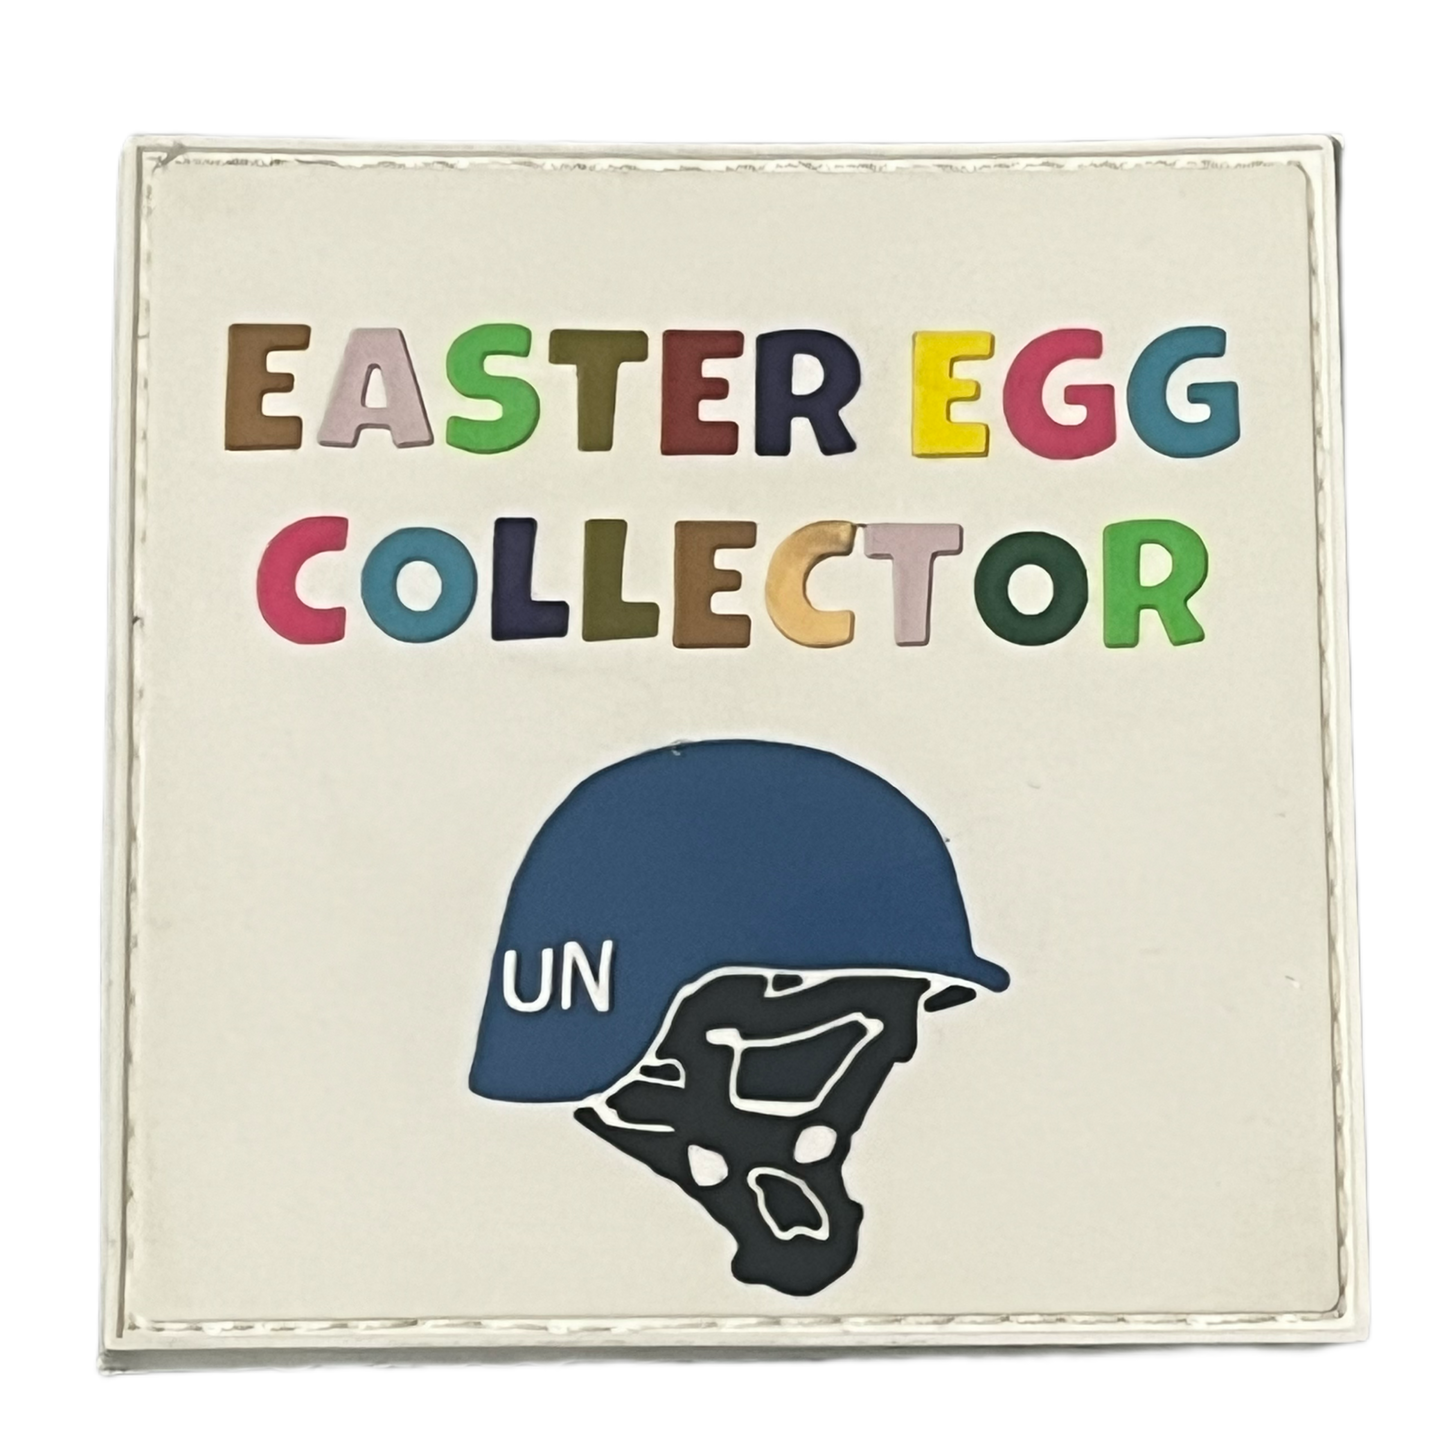 Easter Egg (UN Helmet) Collector PVC Morale Patch